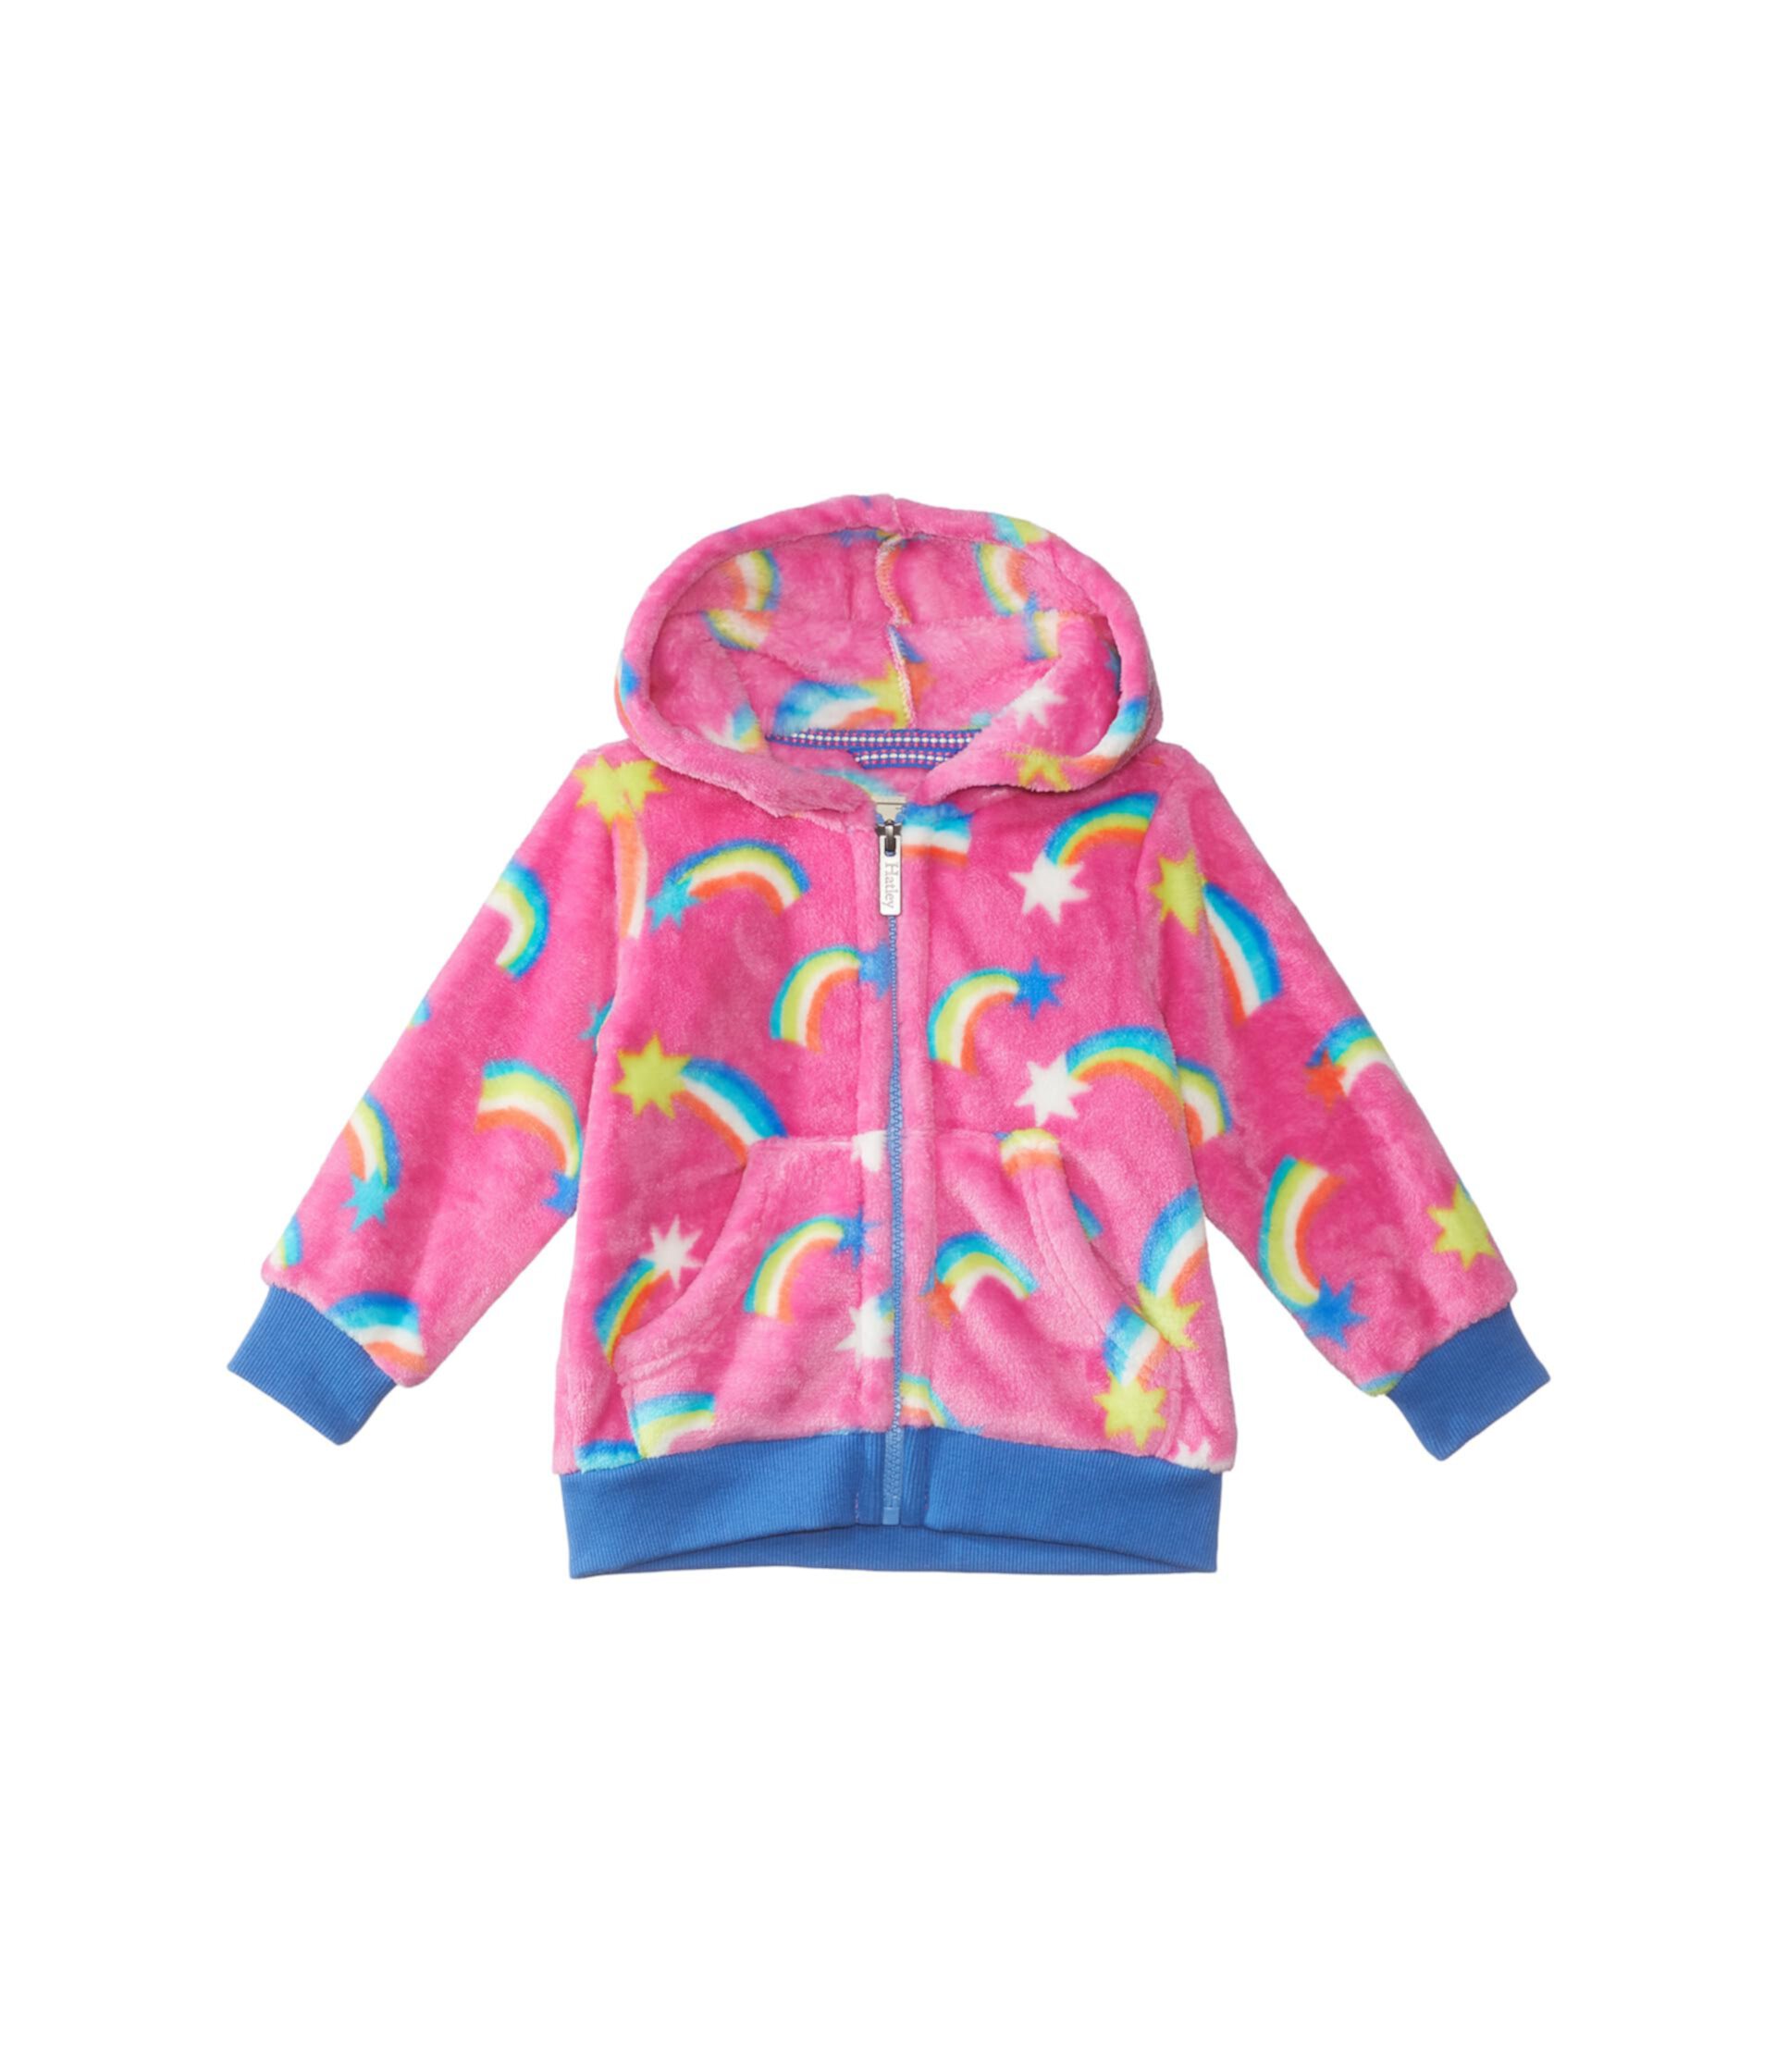 Флисовая куртка с капюшоном Shooting Stars (для малышей/маленьких детей/больших детей) Hatley